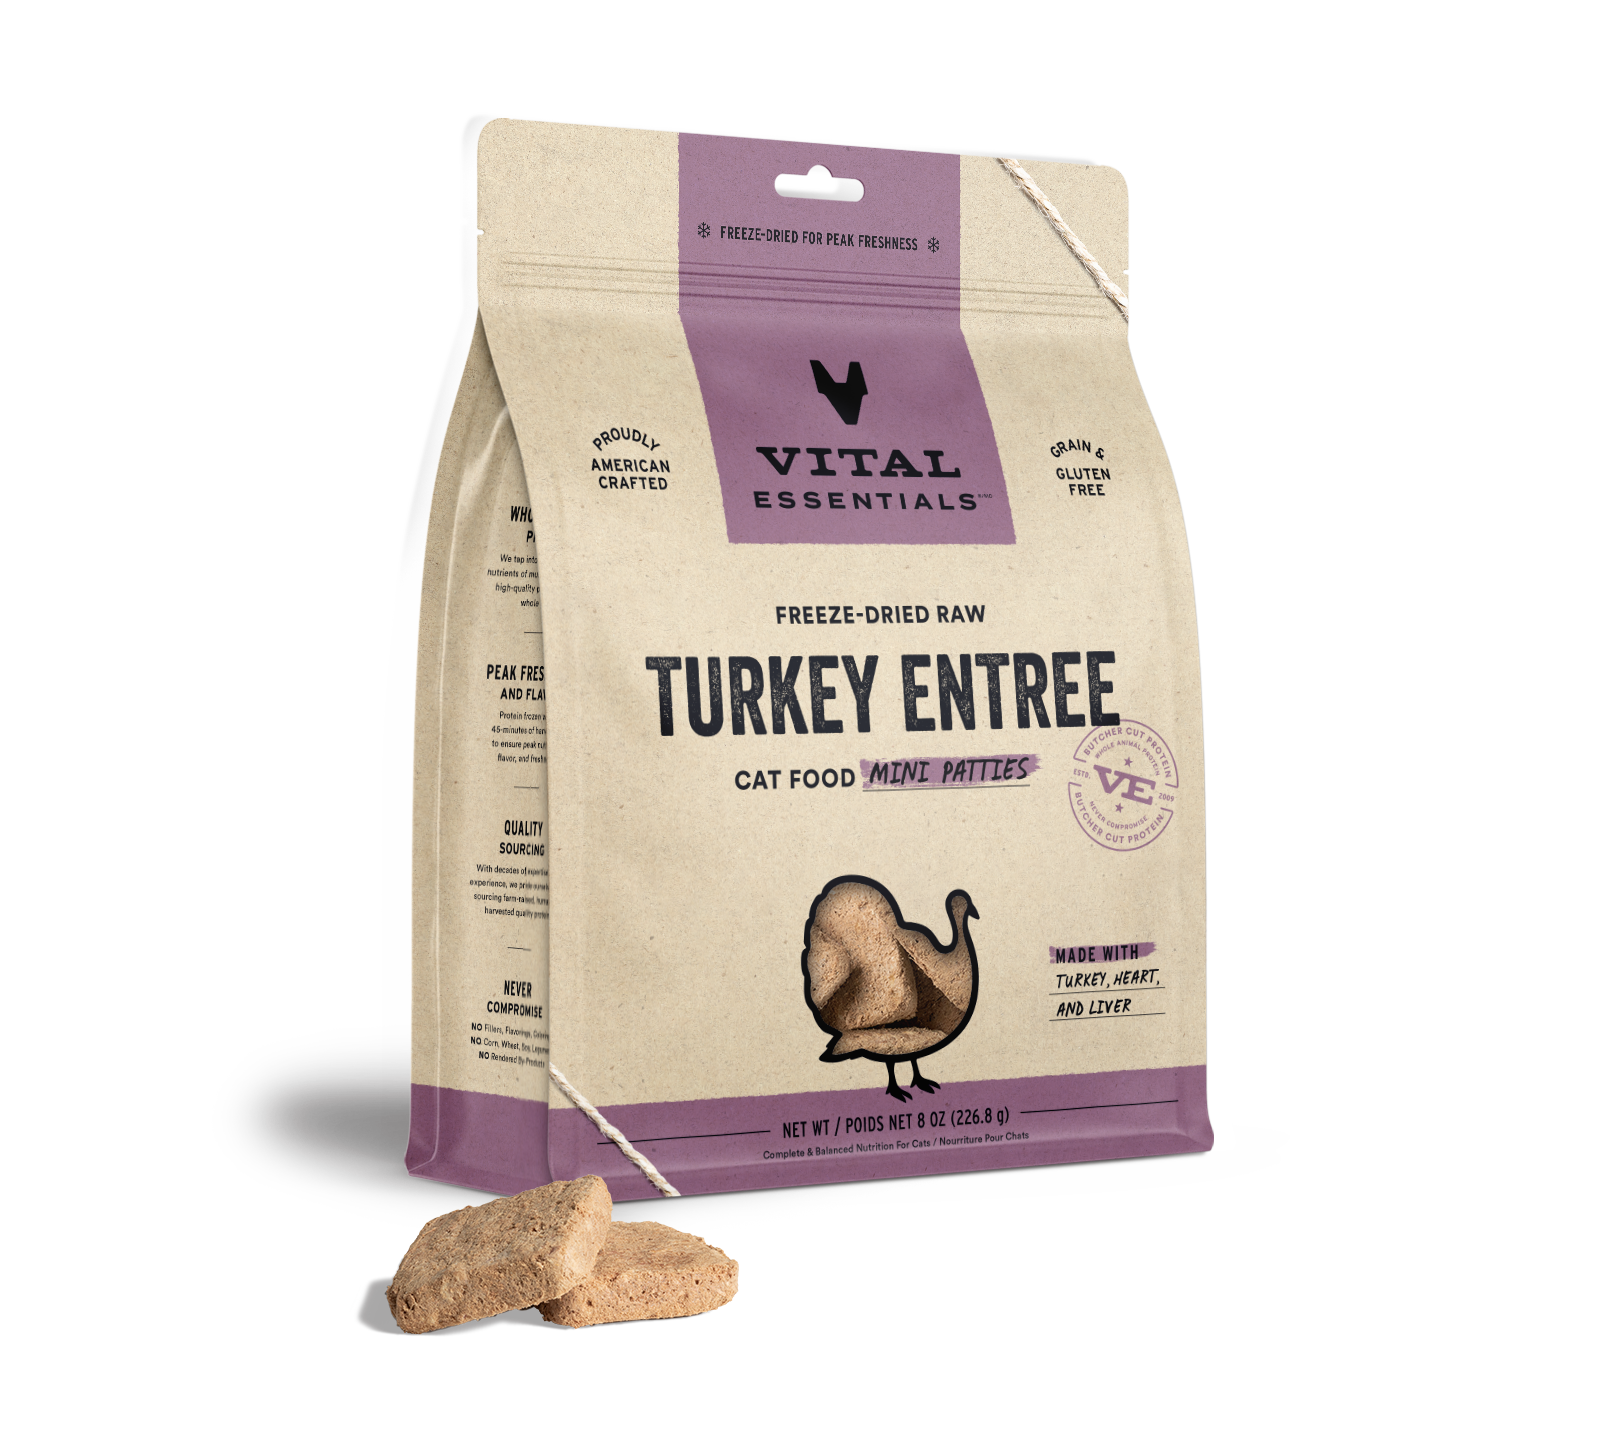 Vital Essentials Freeze-Dried Raw Turkey Entree Cat Food Mini Patties, 8 oz - Health/First Aid